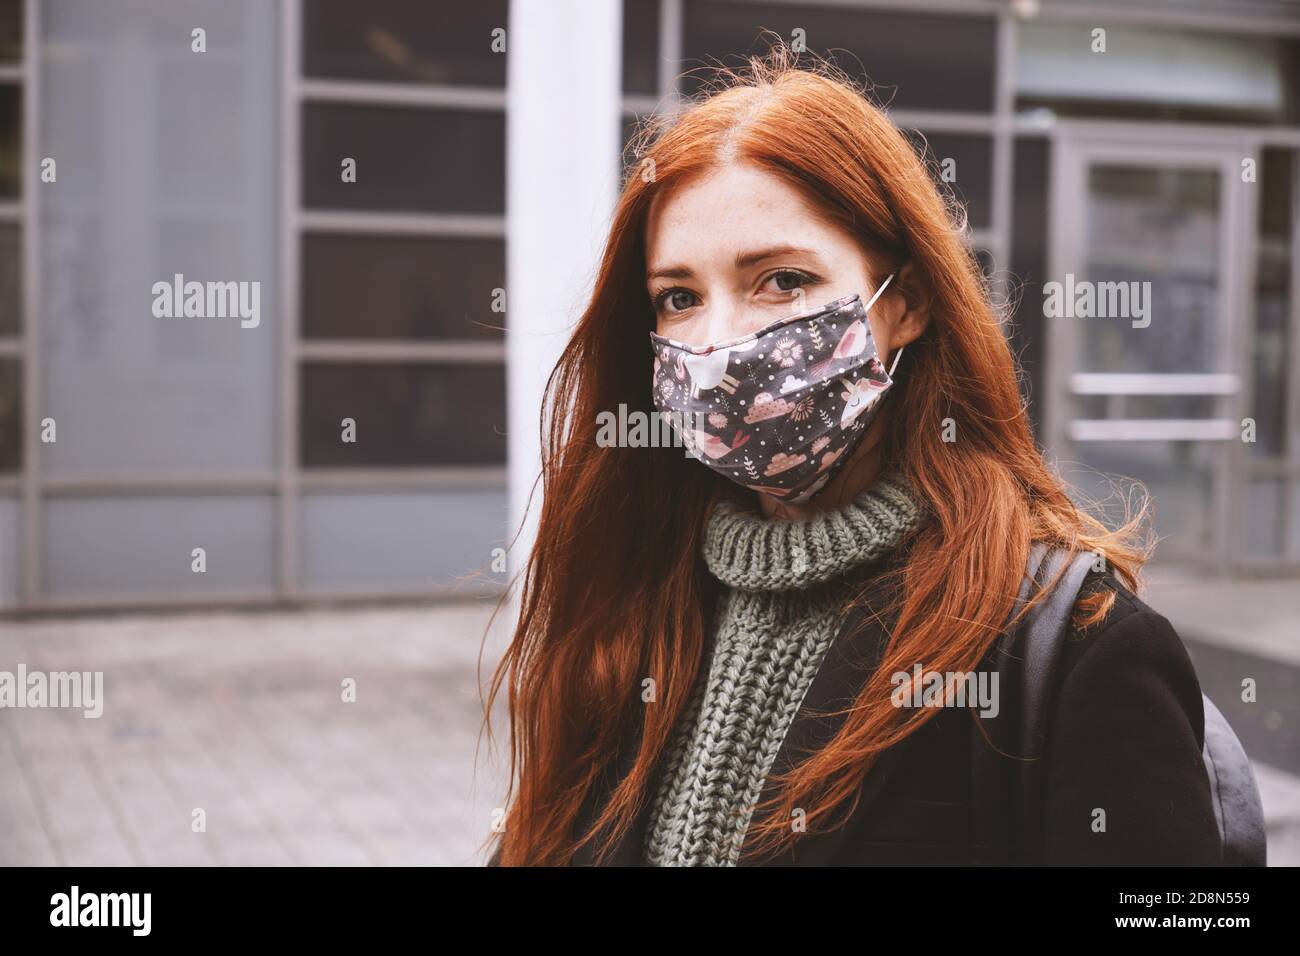 Junge Frau trägt selbstgemachte jeden Tag Stoff Gesichtsmaske im Freien in Stadt - neues Konzept für eine normale Coronavirus-Pandemie des Covid-19 - Echte Menschen Lebensstil im Winter Stockfoto